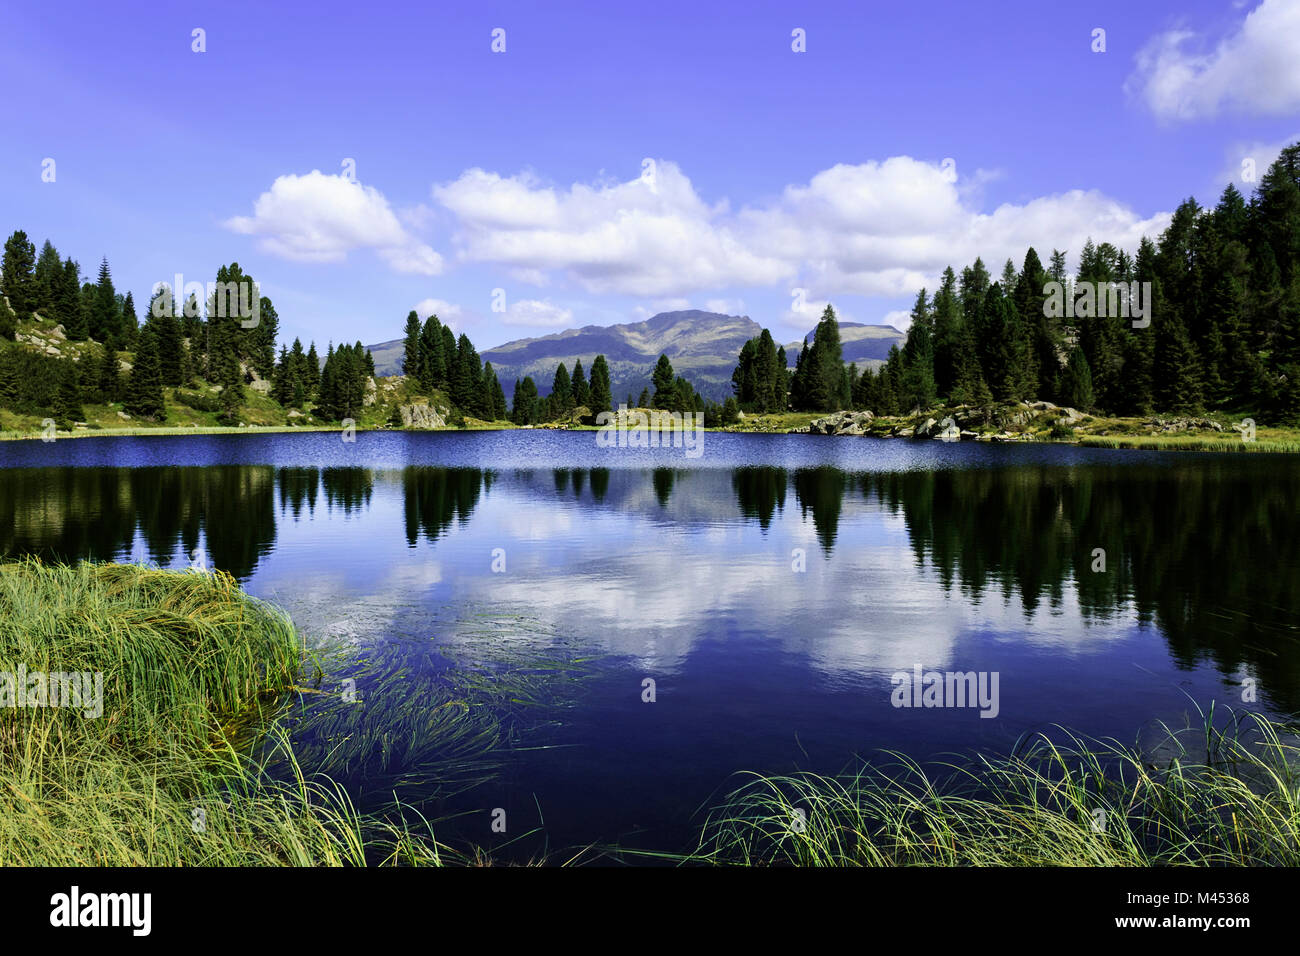 Lago di Colbricon, Parco Naturale Paneveggio-Pale di San Martino, provincia di Trento, Trentino Alto Adige, Italia, Europa Foto Stock